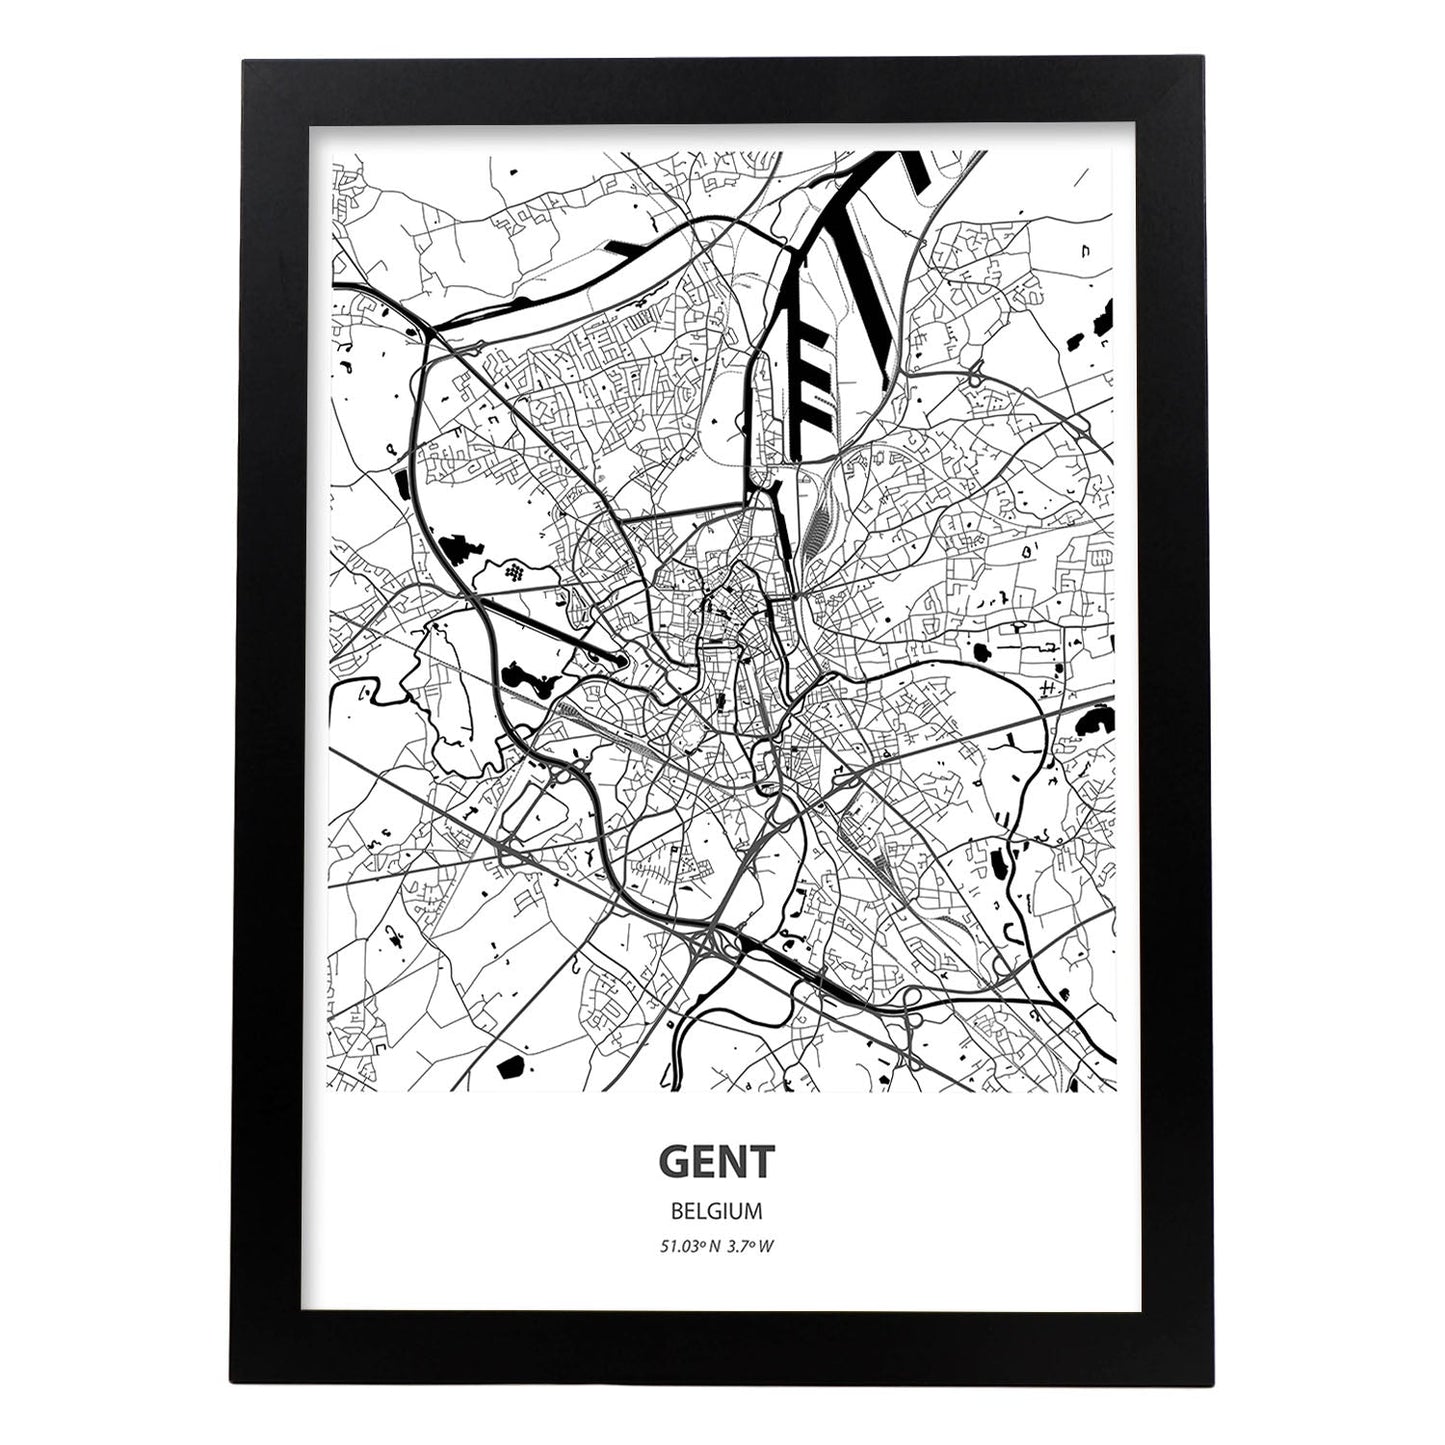 Poster con mapa de Gent - Belgica. Láminas de ciudades de Holanda y Bélgica con mares y ríos en color negro.-Artwork-Nacnic-A3-Marco Negro-Nacnic Estudio SL